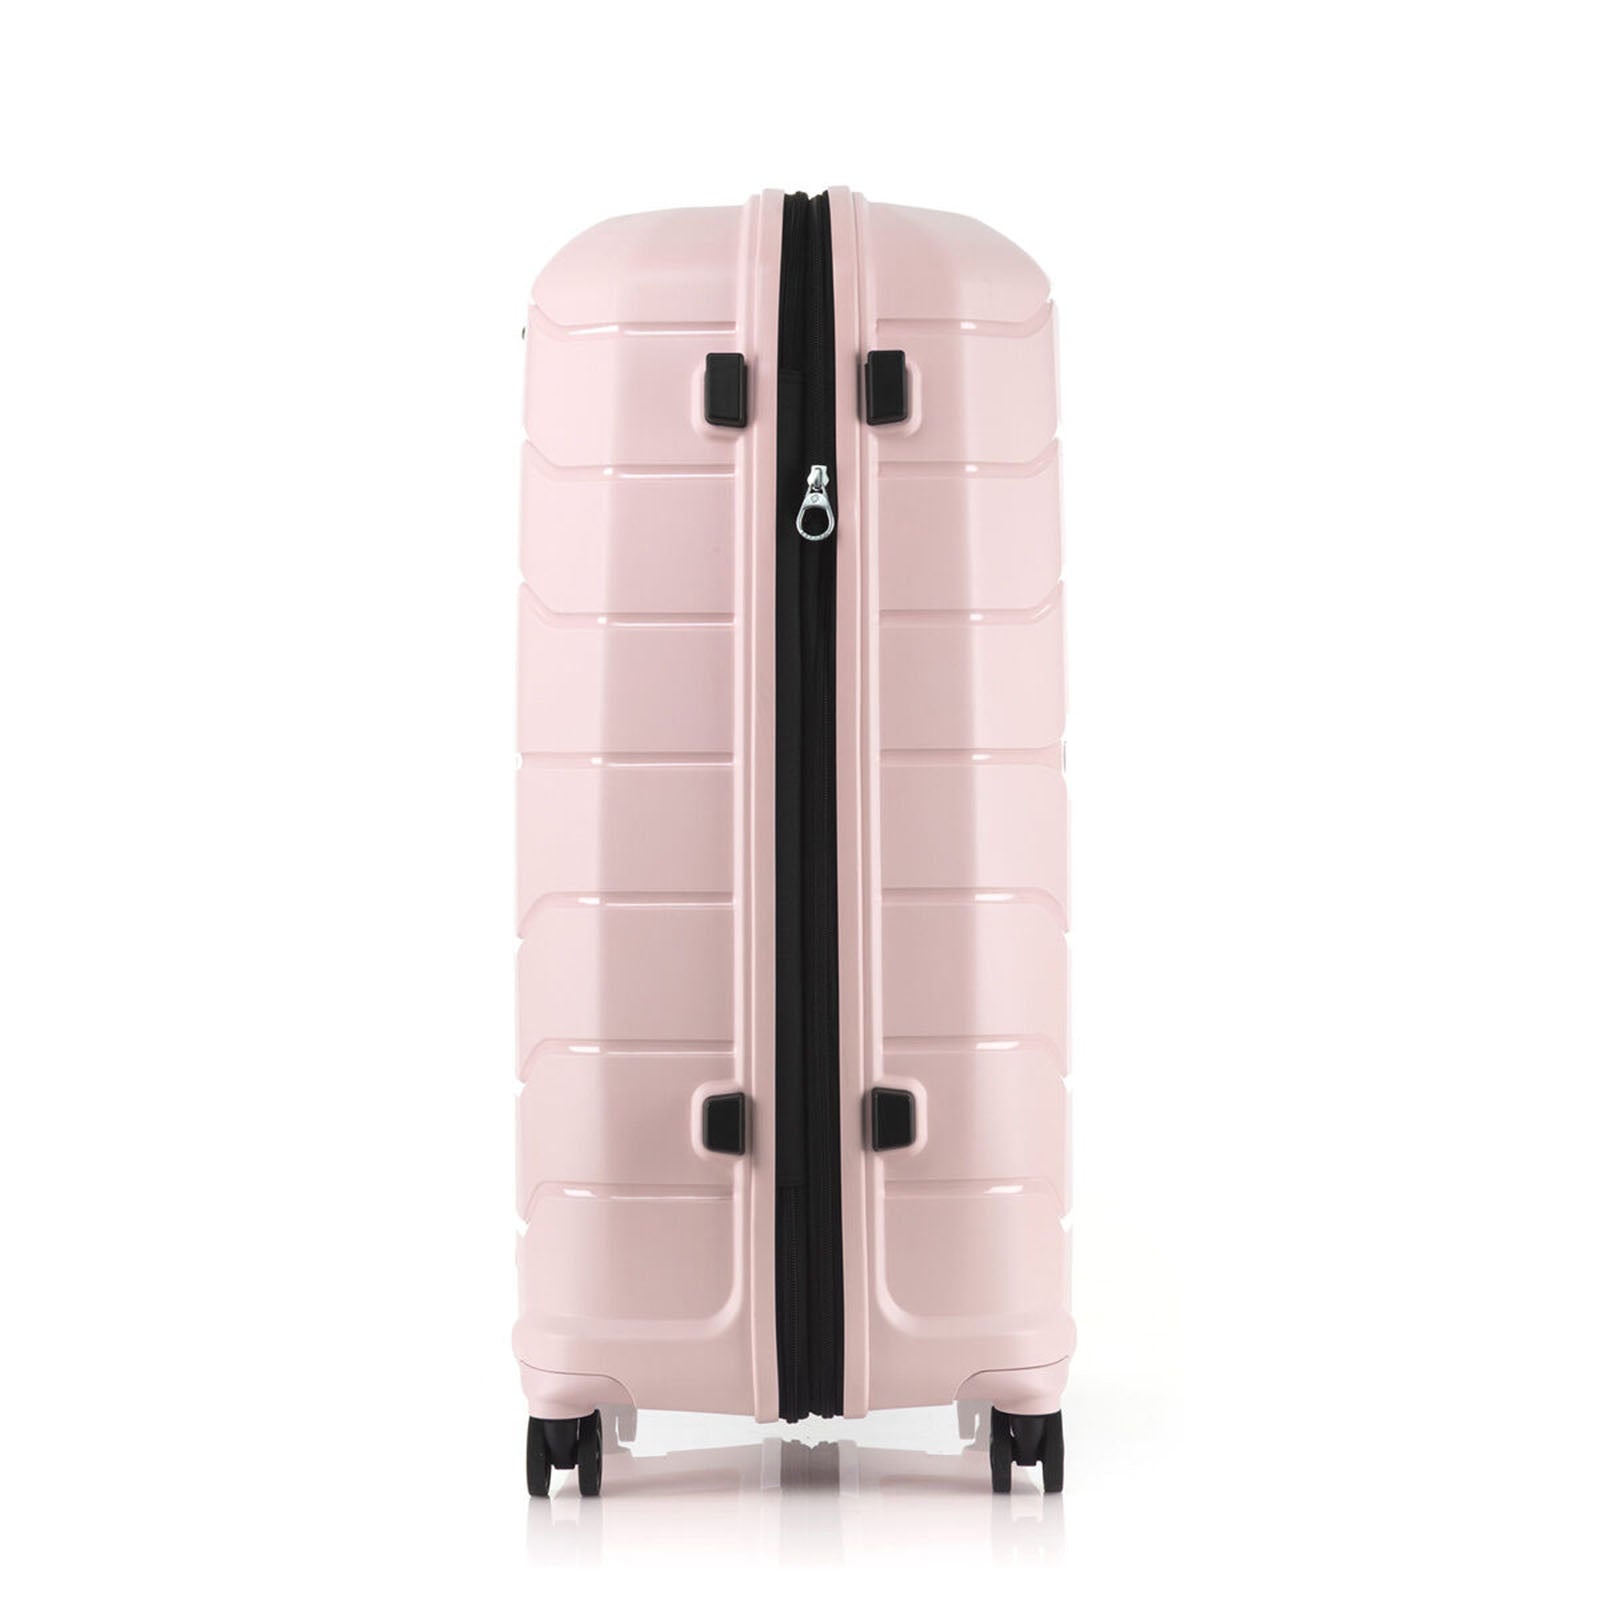 Samsonite Oc2lite 81cm Suitcase Soft Pink